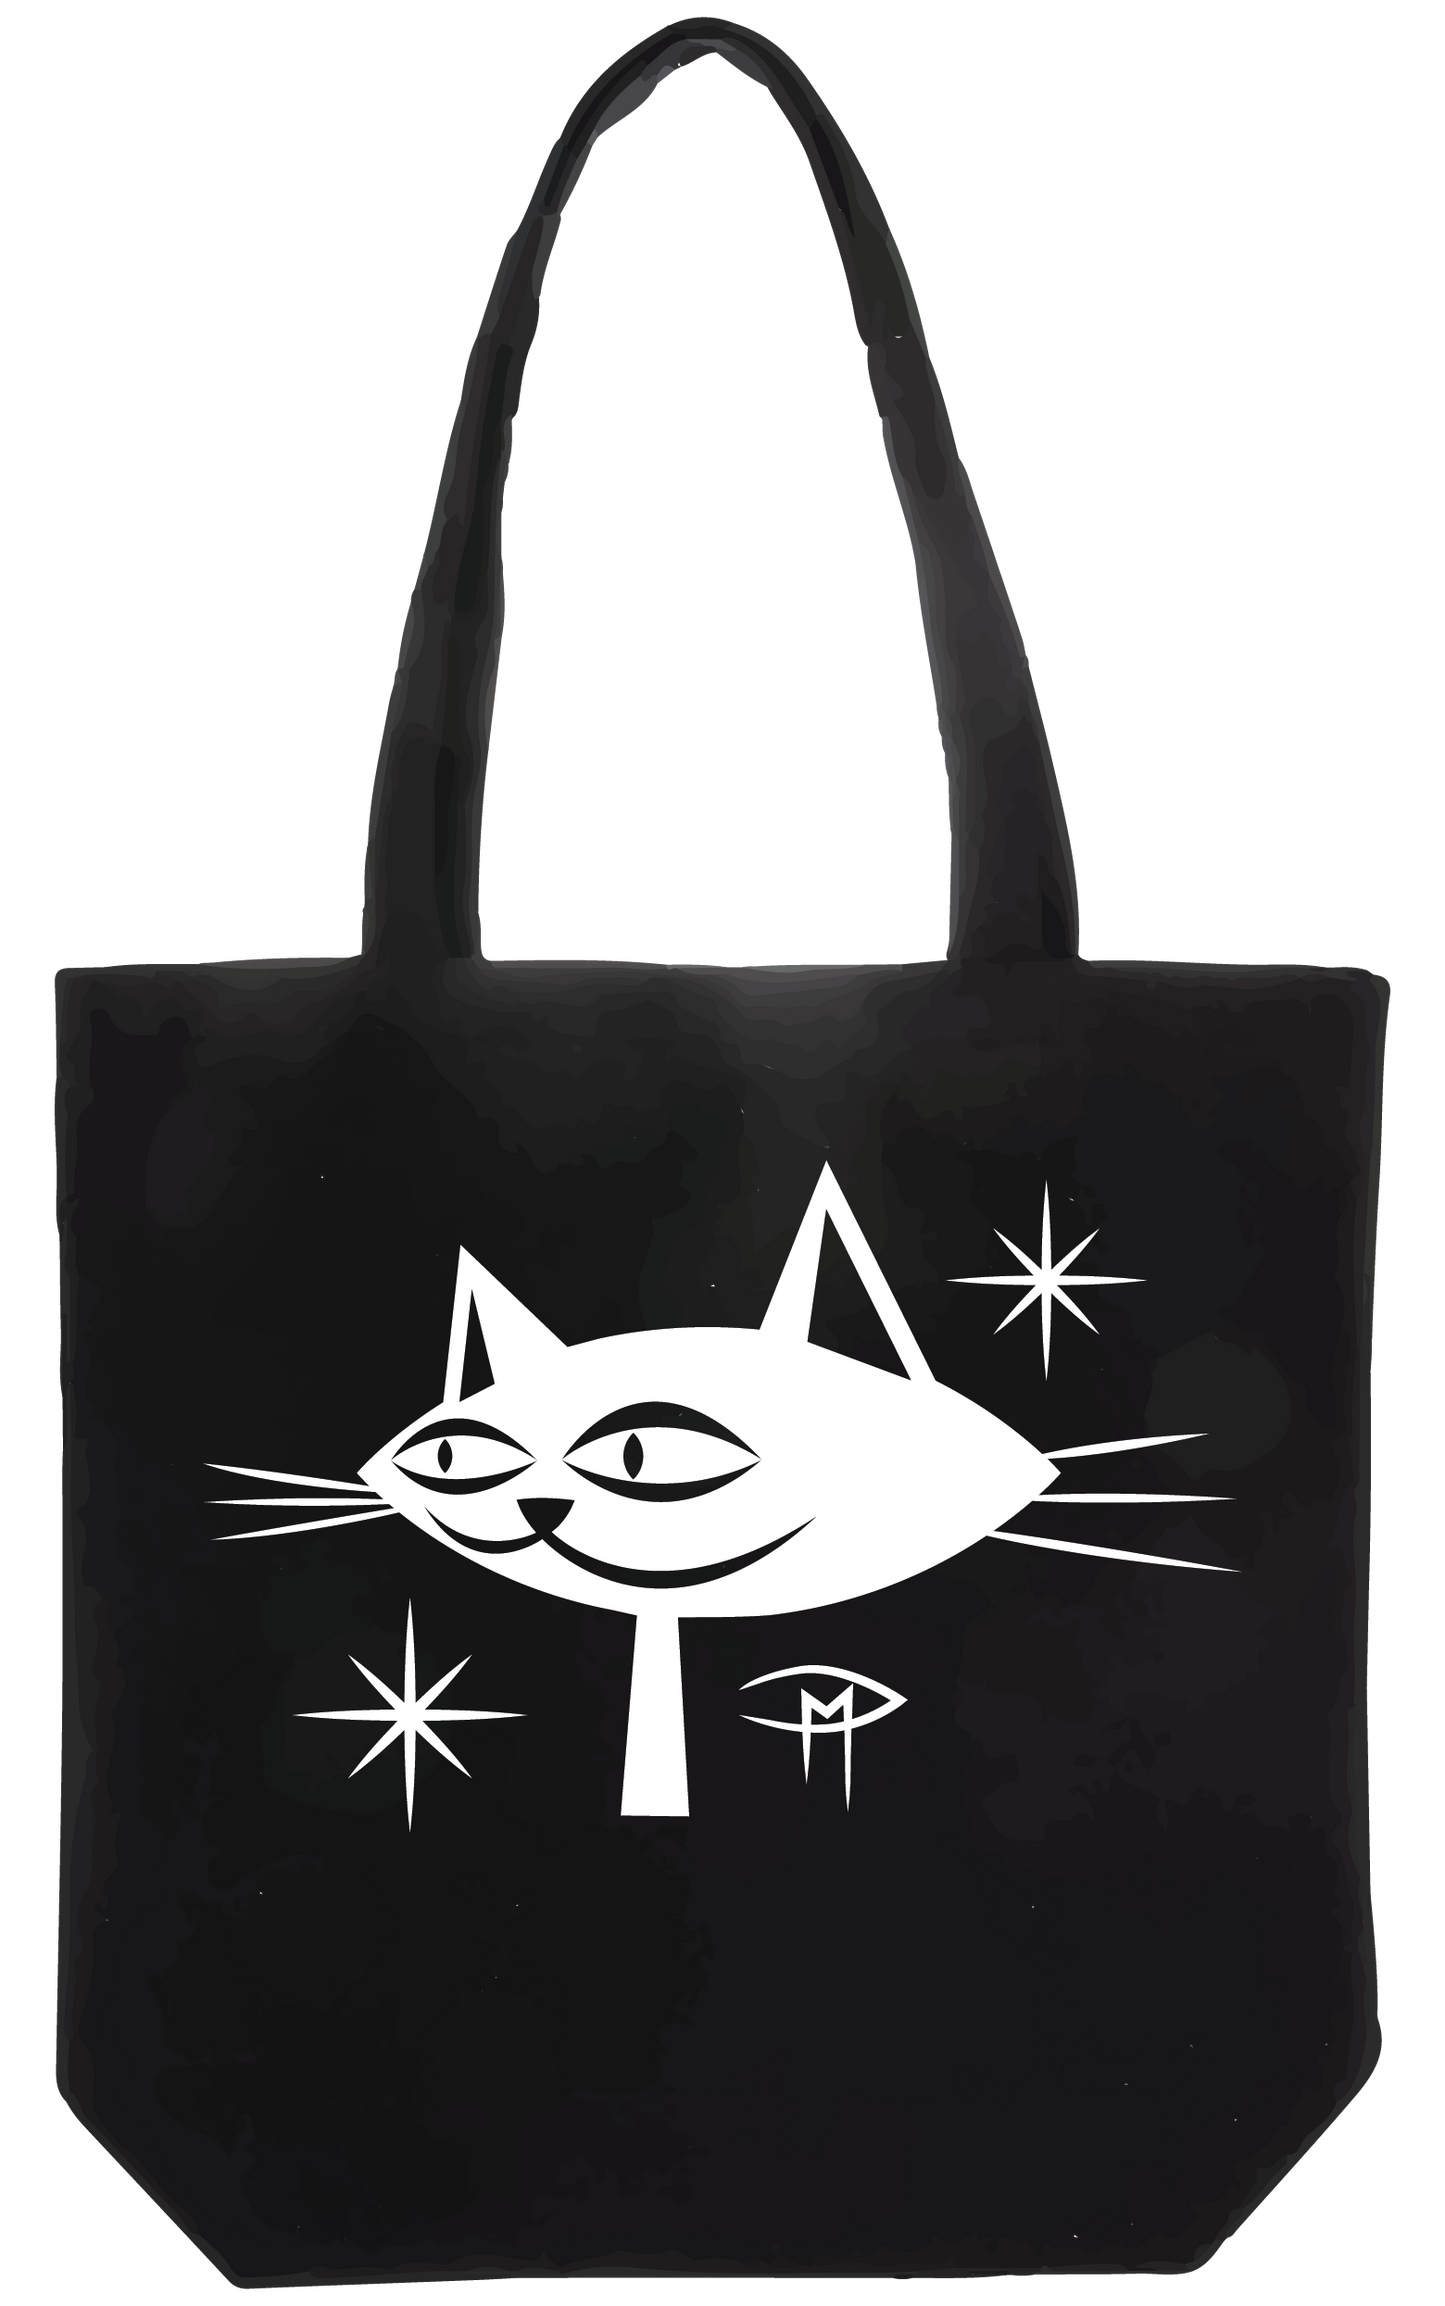 Kittie Tote Bag White Shimmer Design